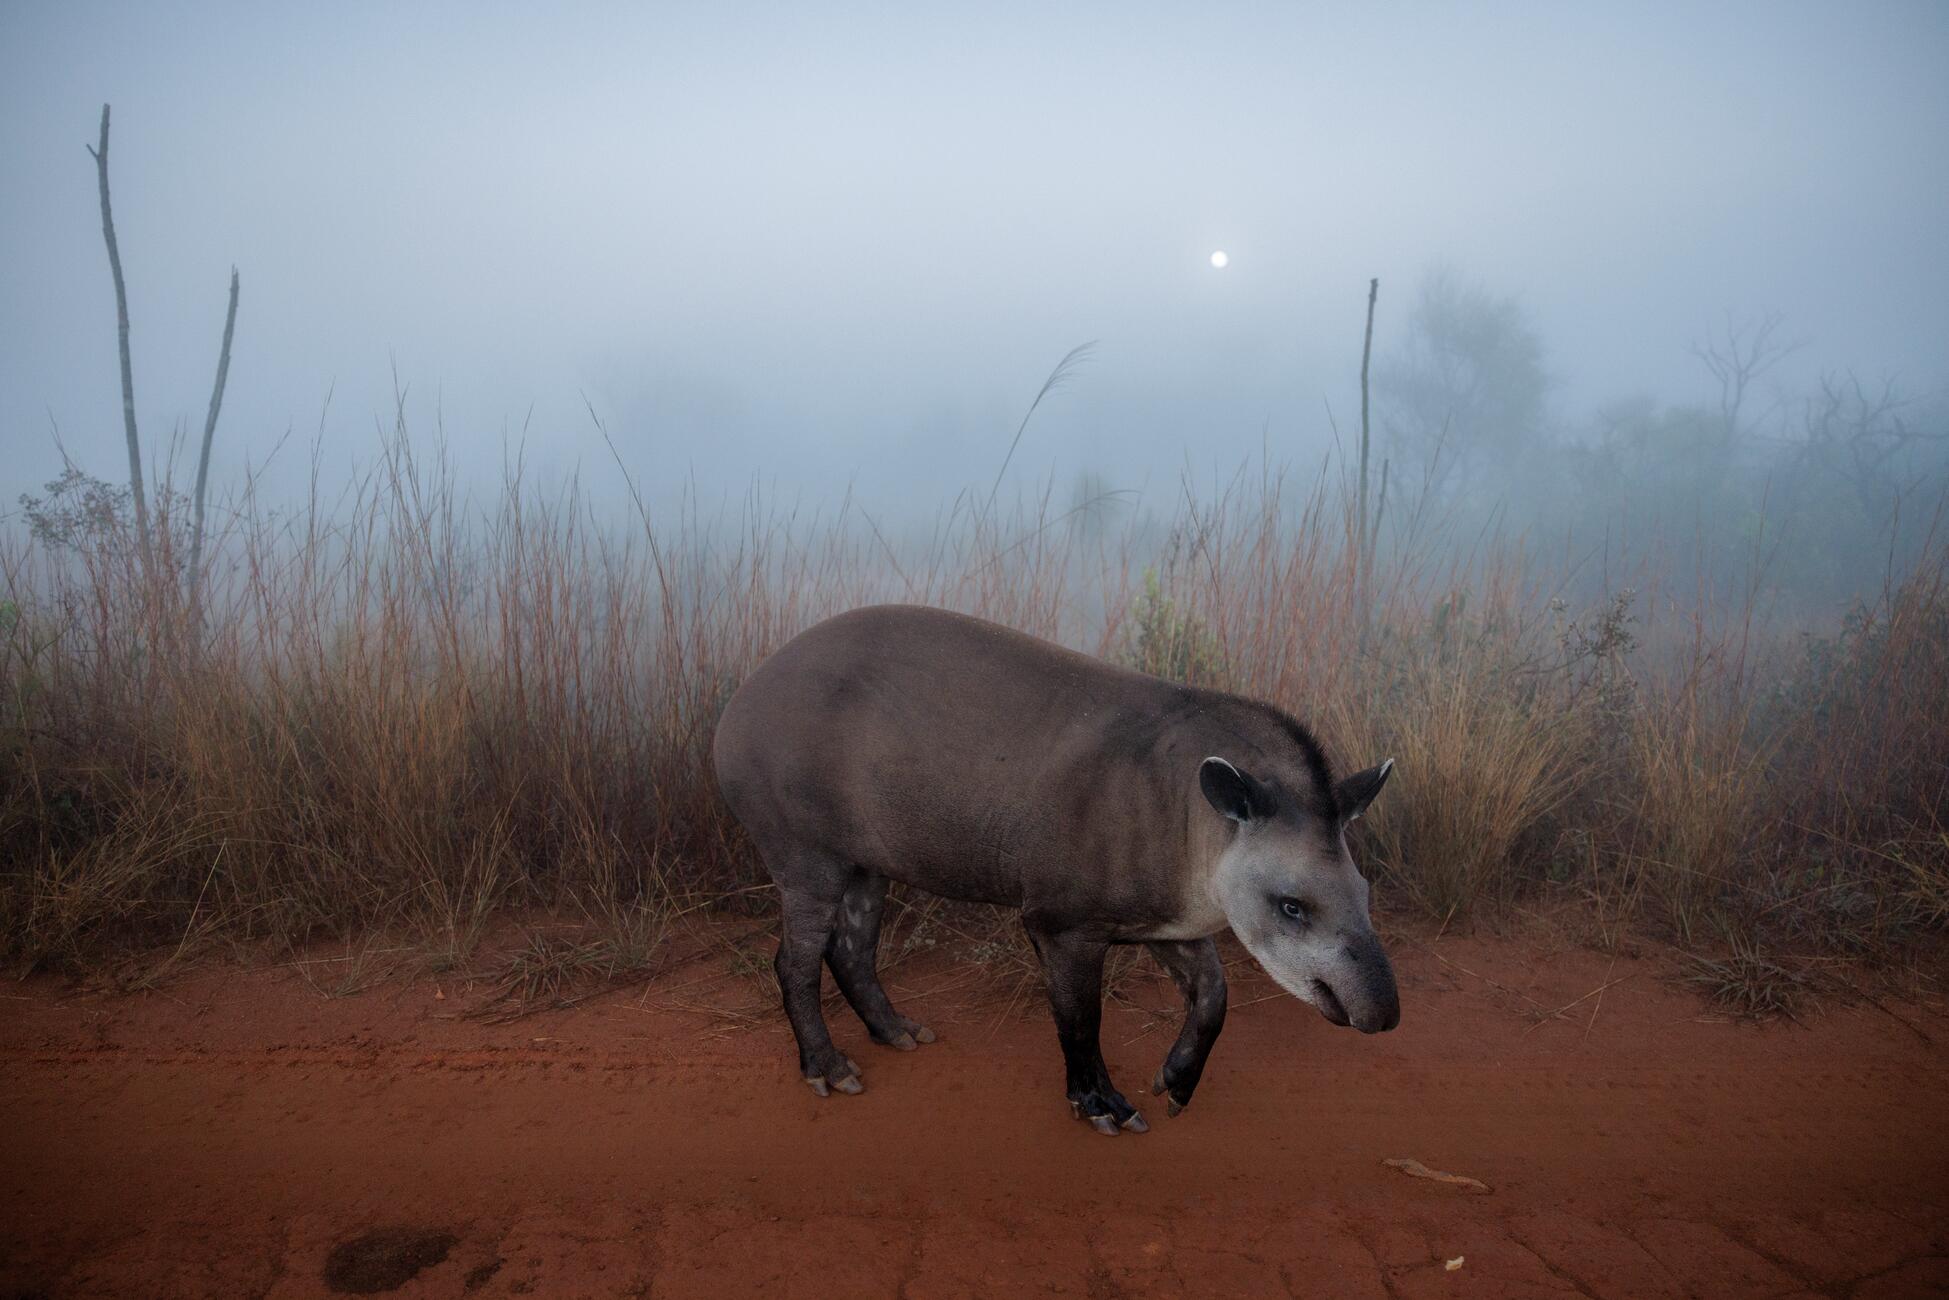 Изображение животного тапира с коротким коричнево-серым мехом и длинным округлым носом, идущего по грунтовой тропинке в засушливом лугу